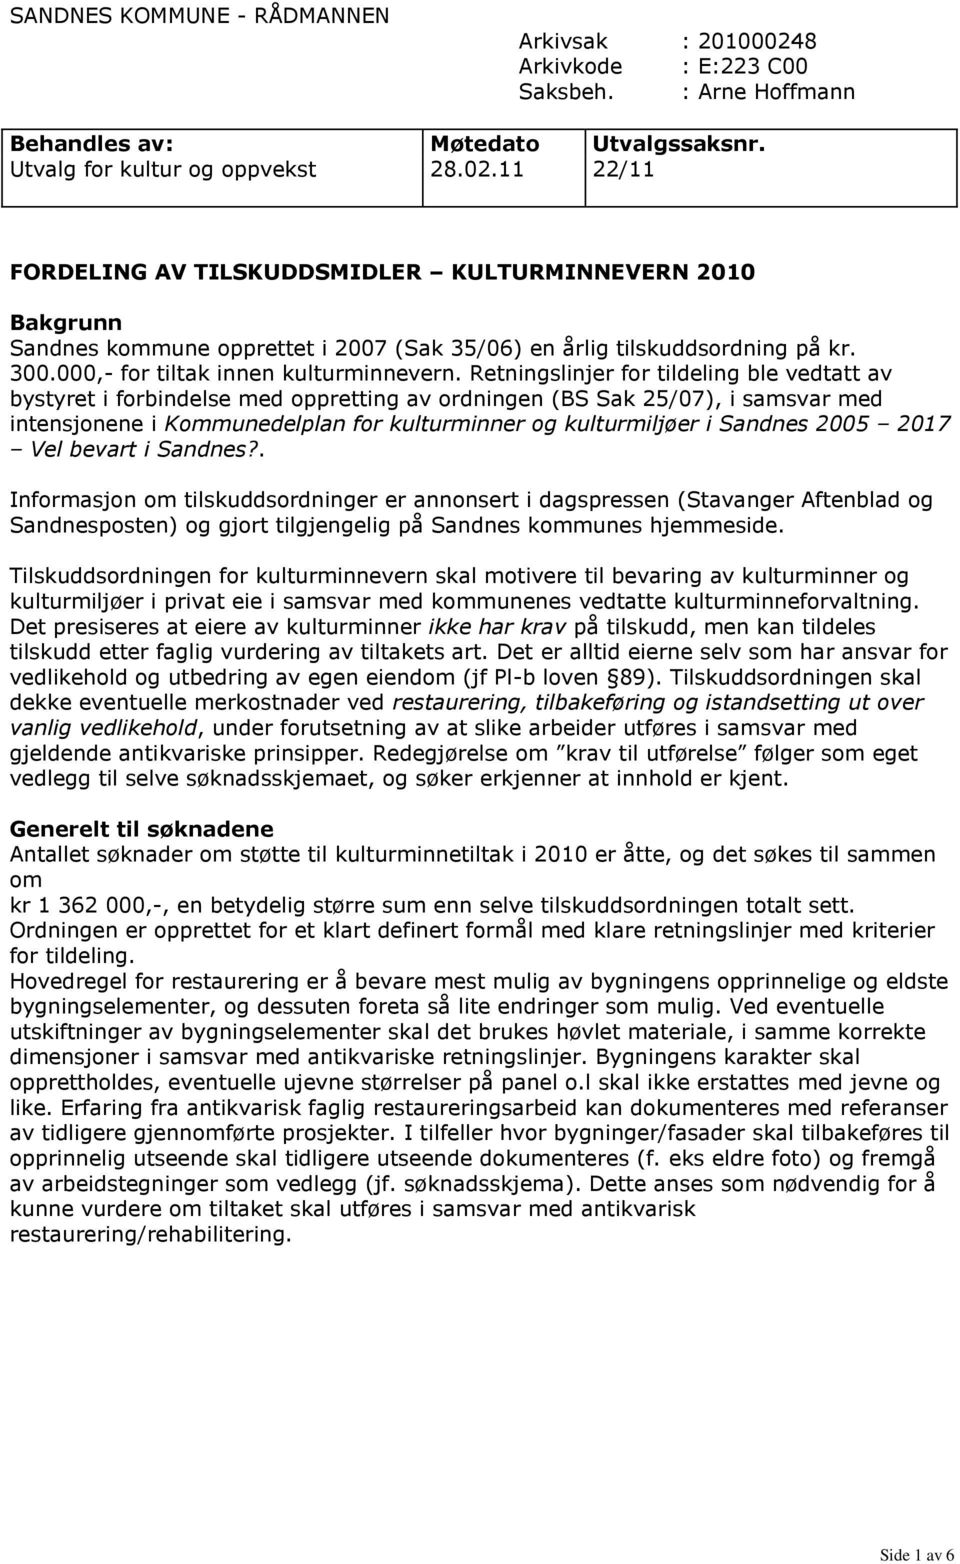 11 22/11 FORDELING AV TILSKUDDSMIDLER KULTURMINNEVERN 2010 Bakgrunn Sandnes kommune opprettet i 2007 (Sak 35/06) en årlig tilskuddsordning på kr. 300.000,- for tiltak innen kulturminnevern.